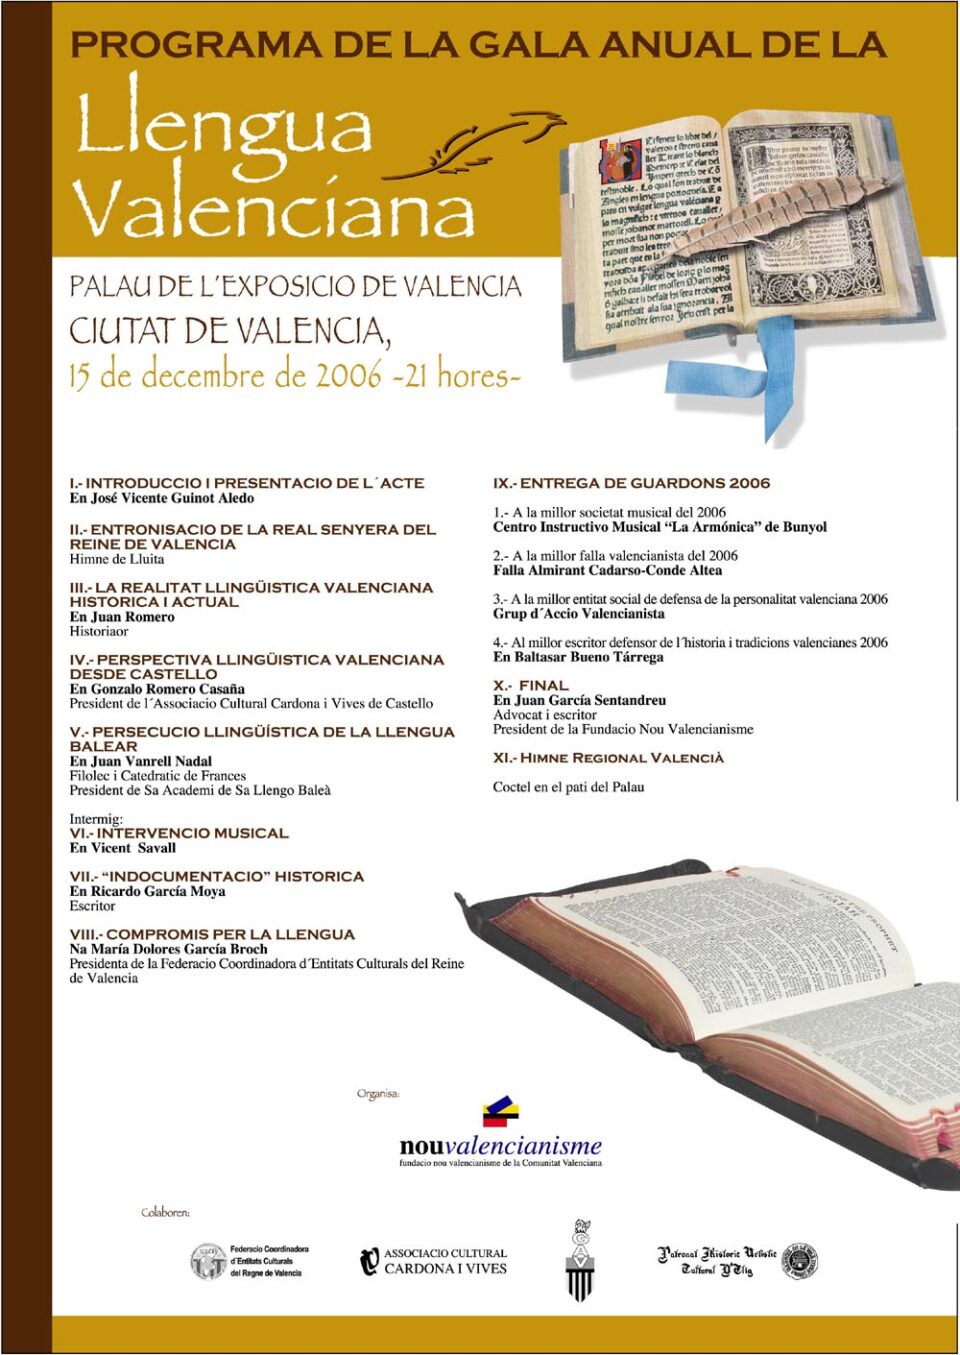 La Fundacio Nou Valencianisme convoca a todos los medios de comunicación a la Gala Anual de Homenaje a la Lengua Valenciana